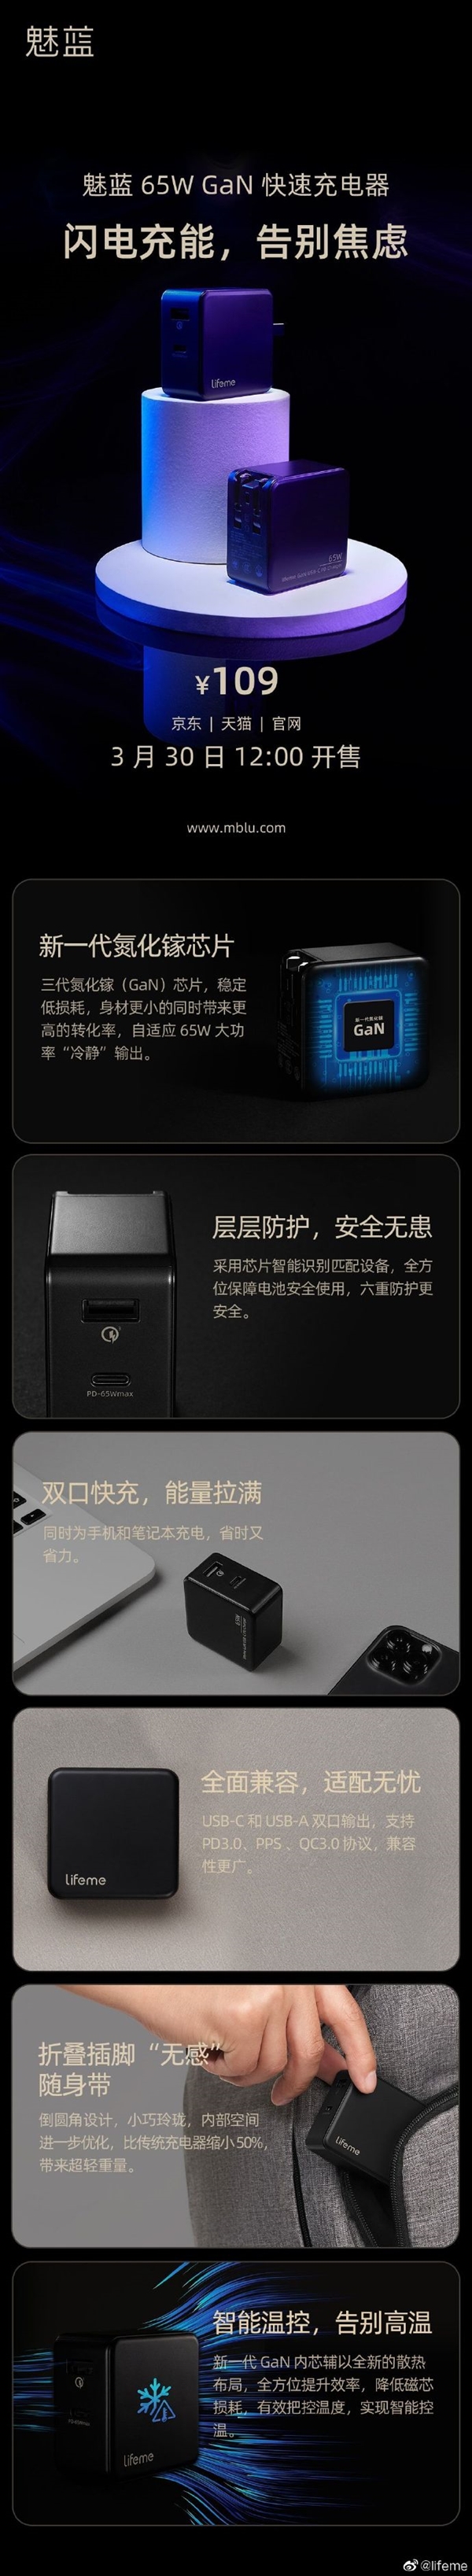 魅蓝65wgan充电器开售，搭载新一代氮化镓芯片